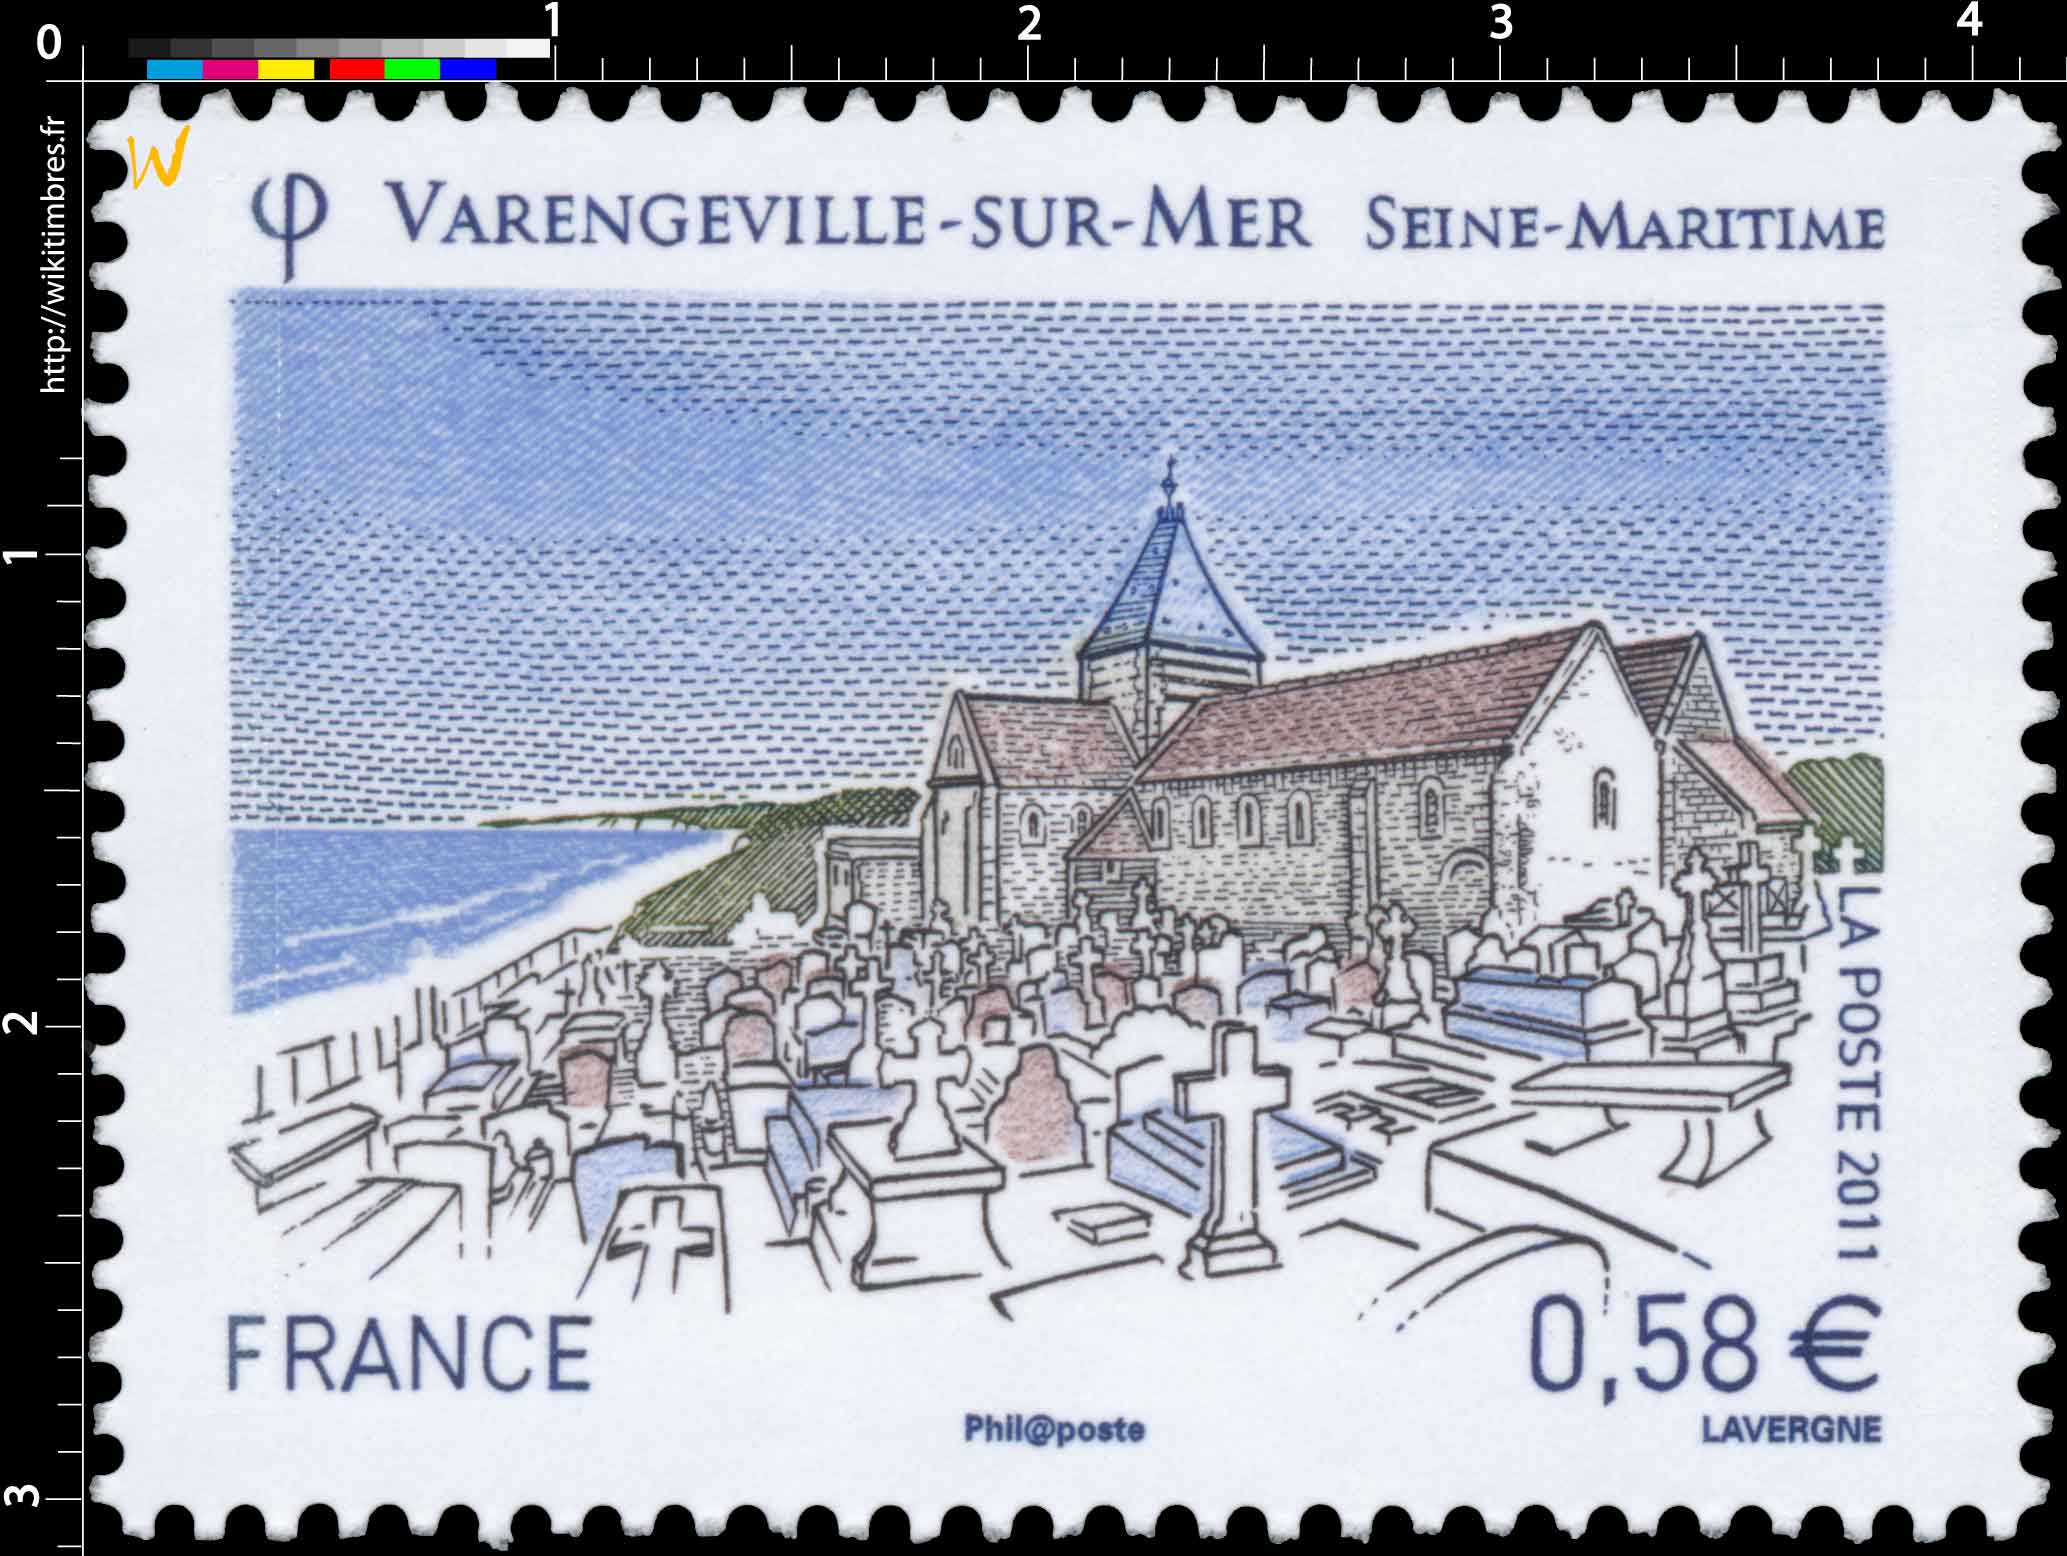 2011 Varengeville-sur–mer Seine-Maritime